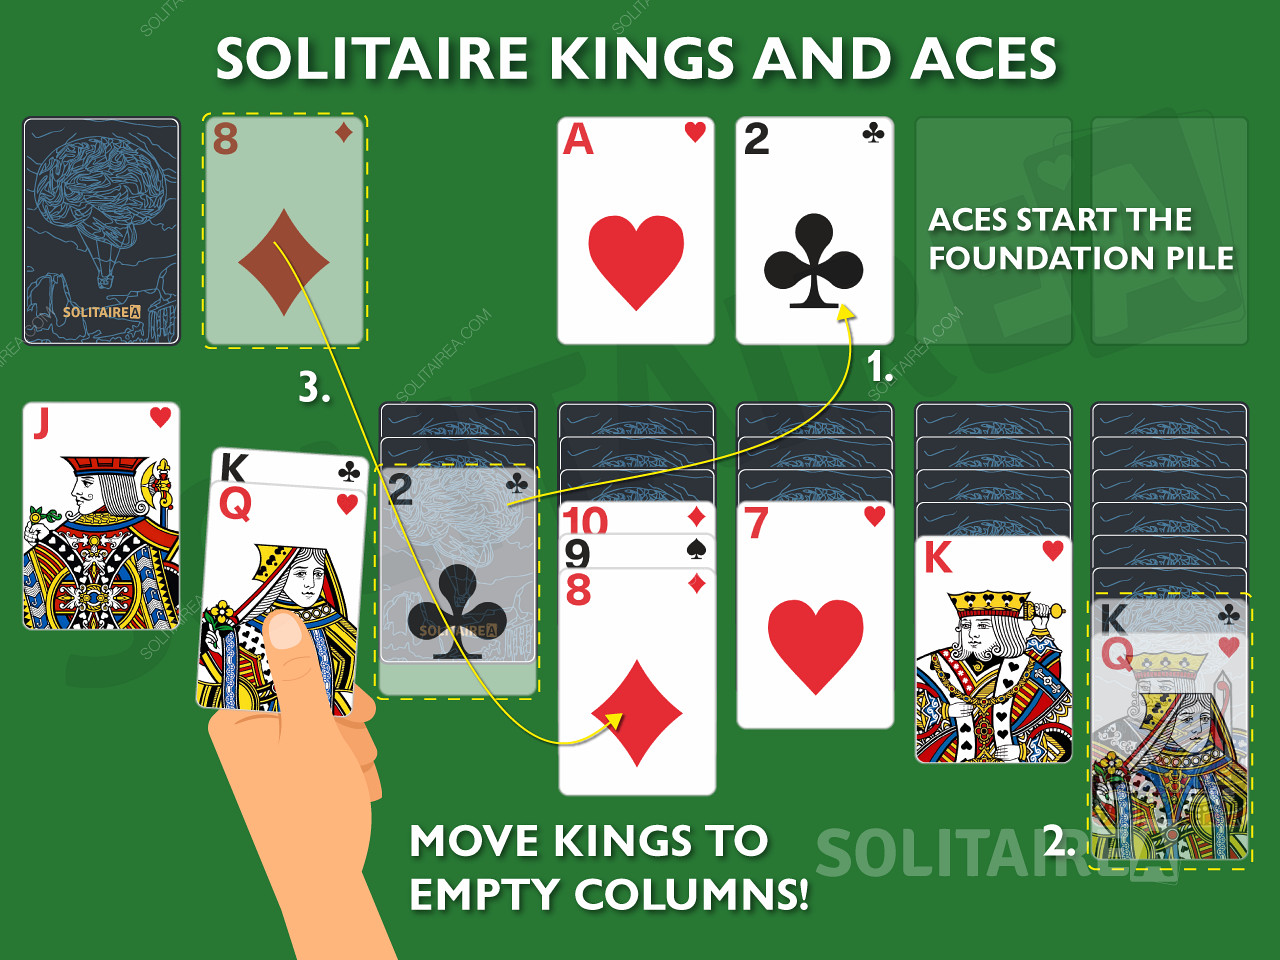 Краљеви и асови су важне карте у Солитаиреу јер су им дозвољени јединствени потези.